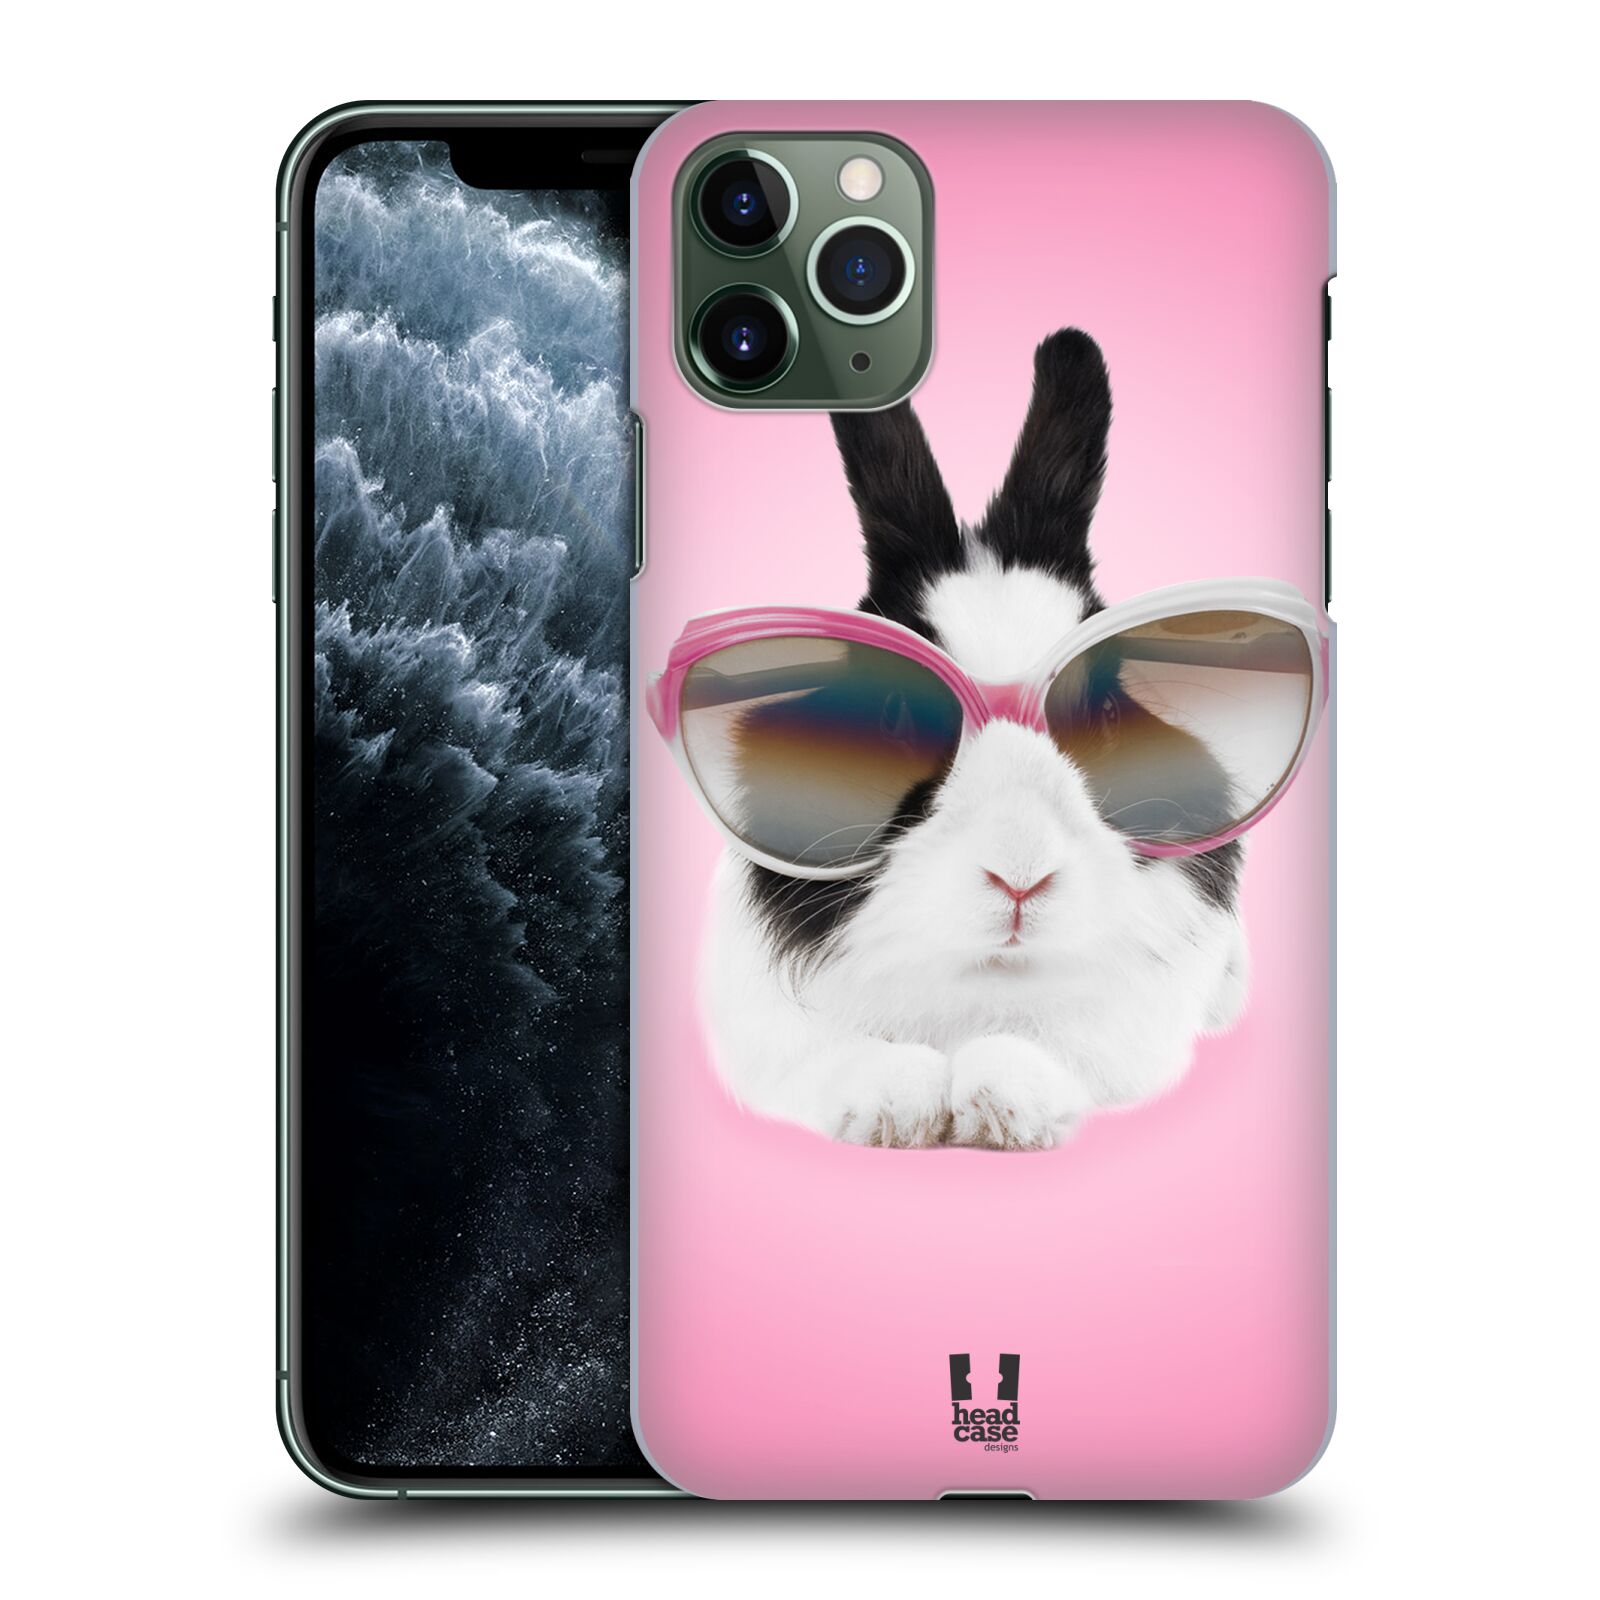 Pouzdro na mobil Apple Iphone 11 PRO MAX - HEAD CASE - vzor Legrační zvířátka roztomilý králíček s brýlemi růžová